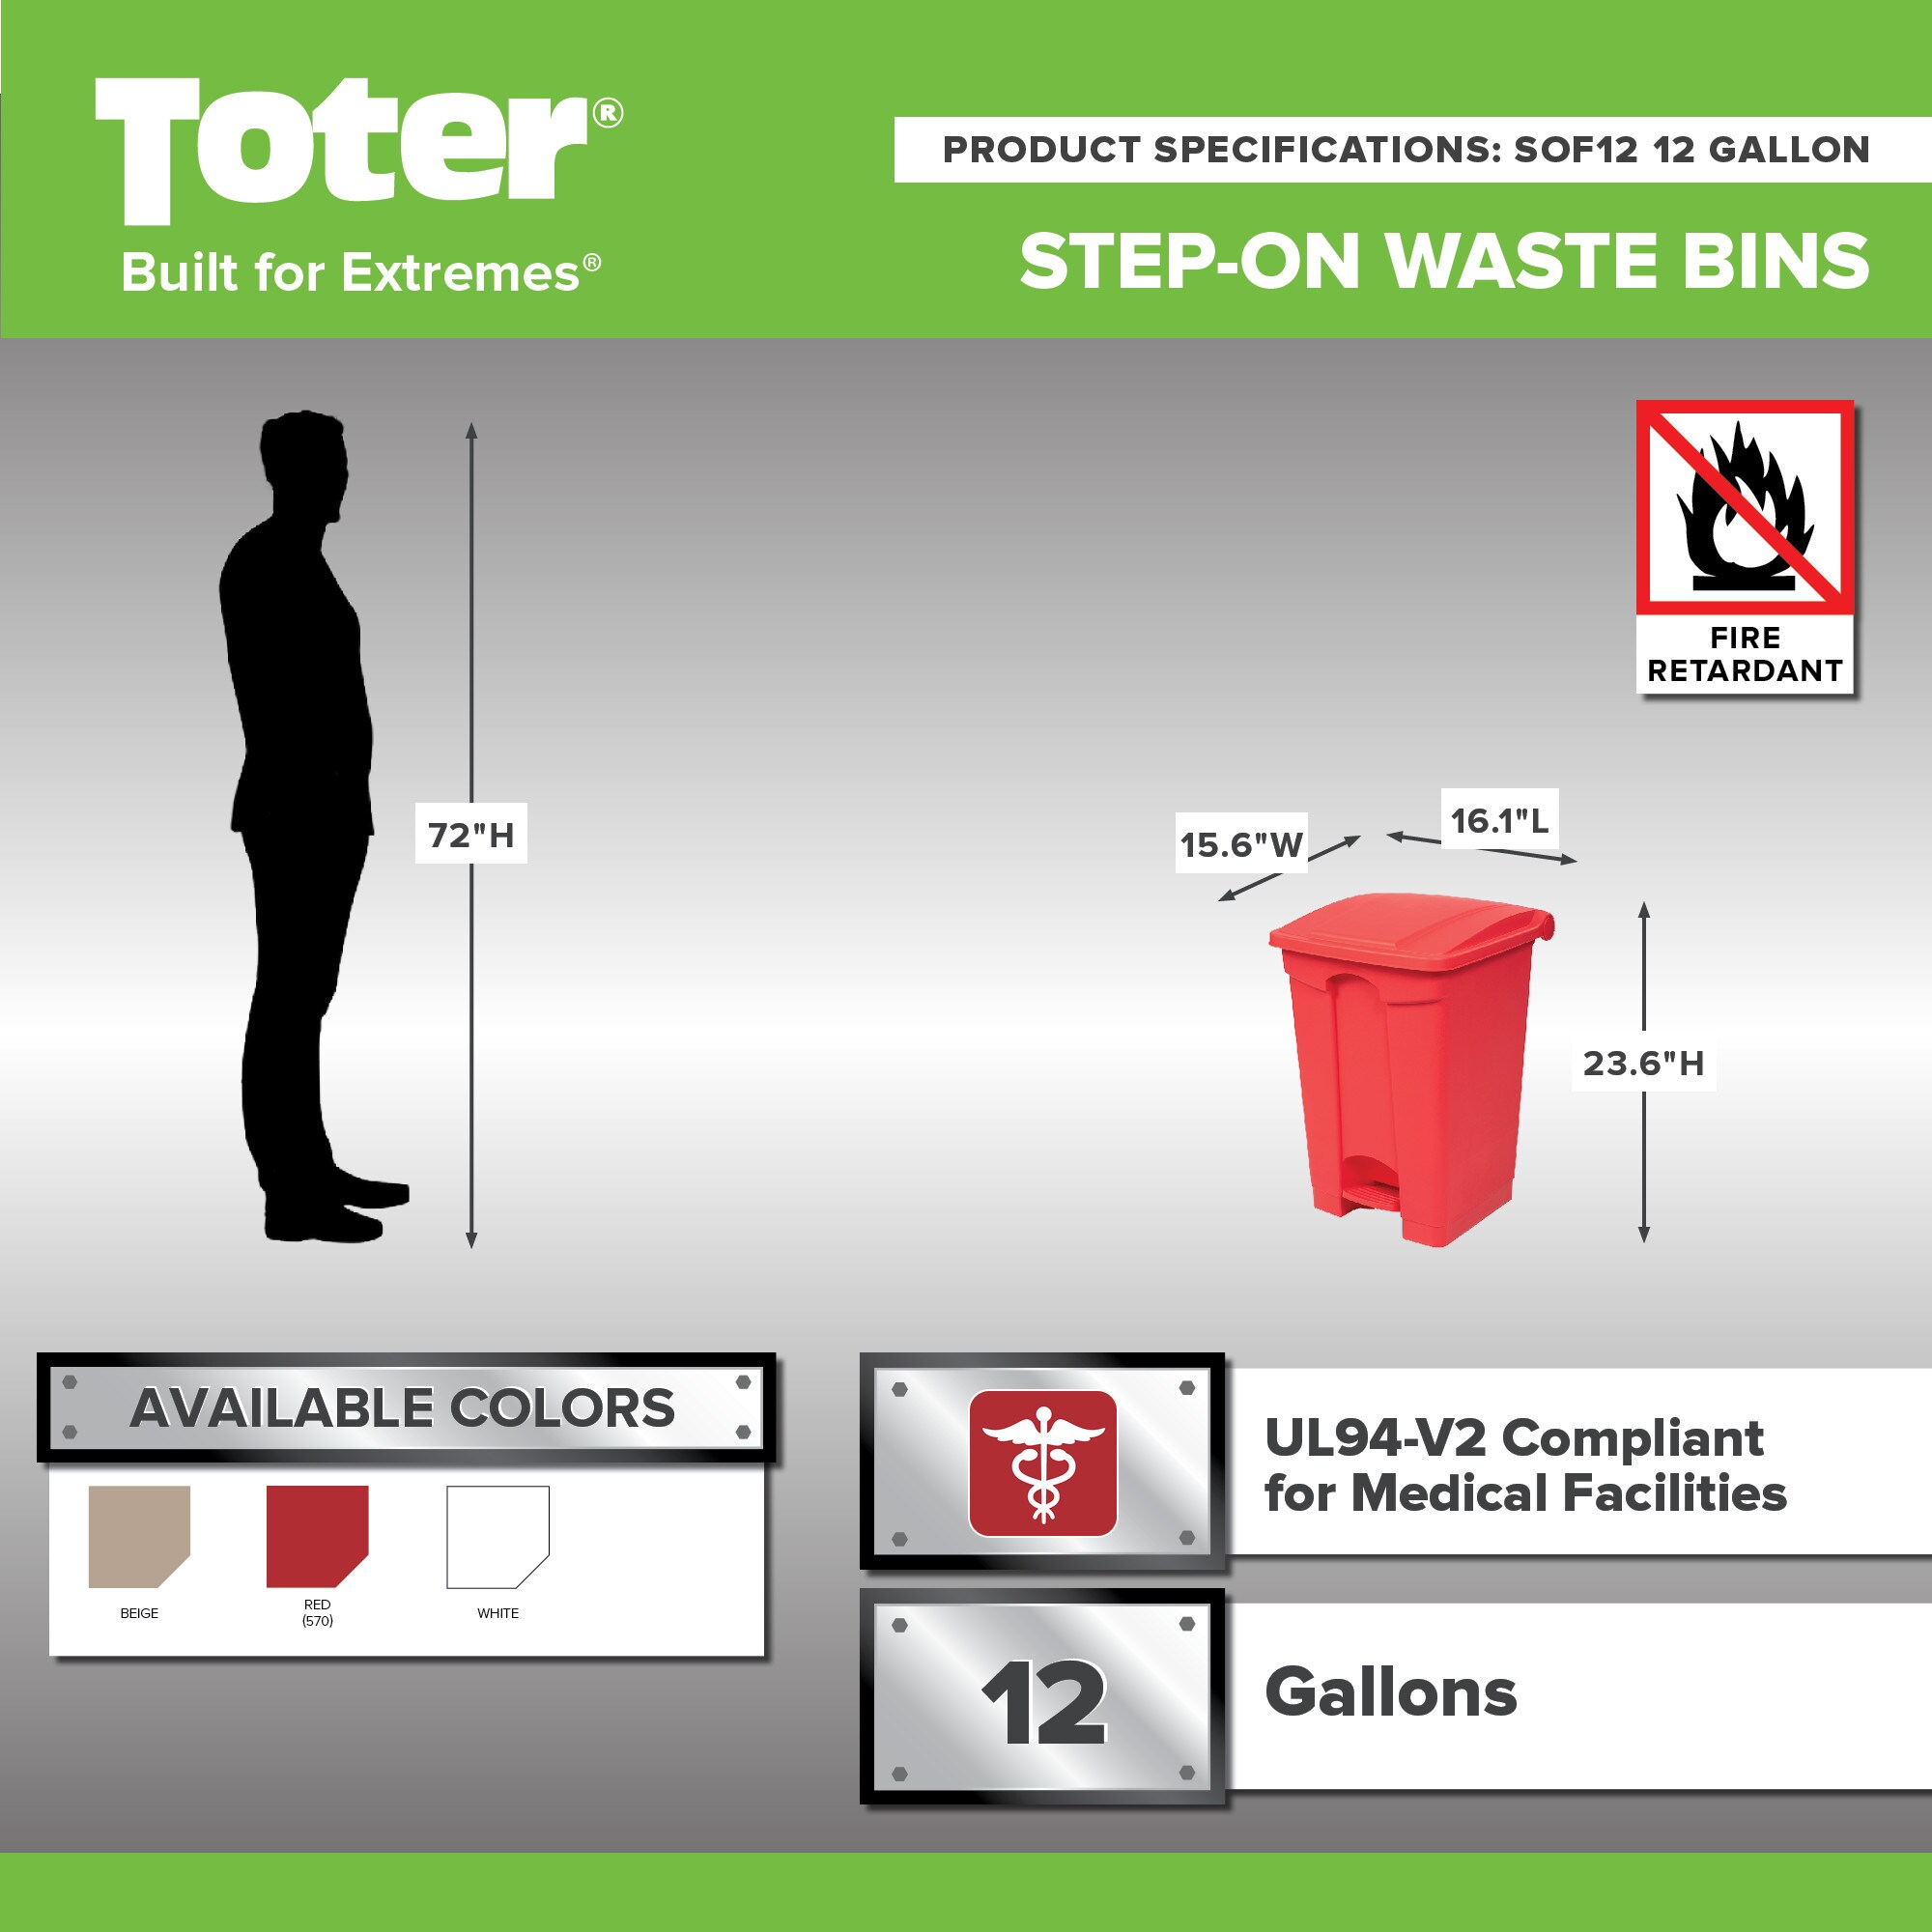 Medium (7-12 Gallons) Trash Cans at